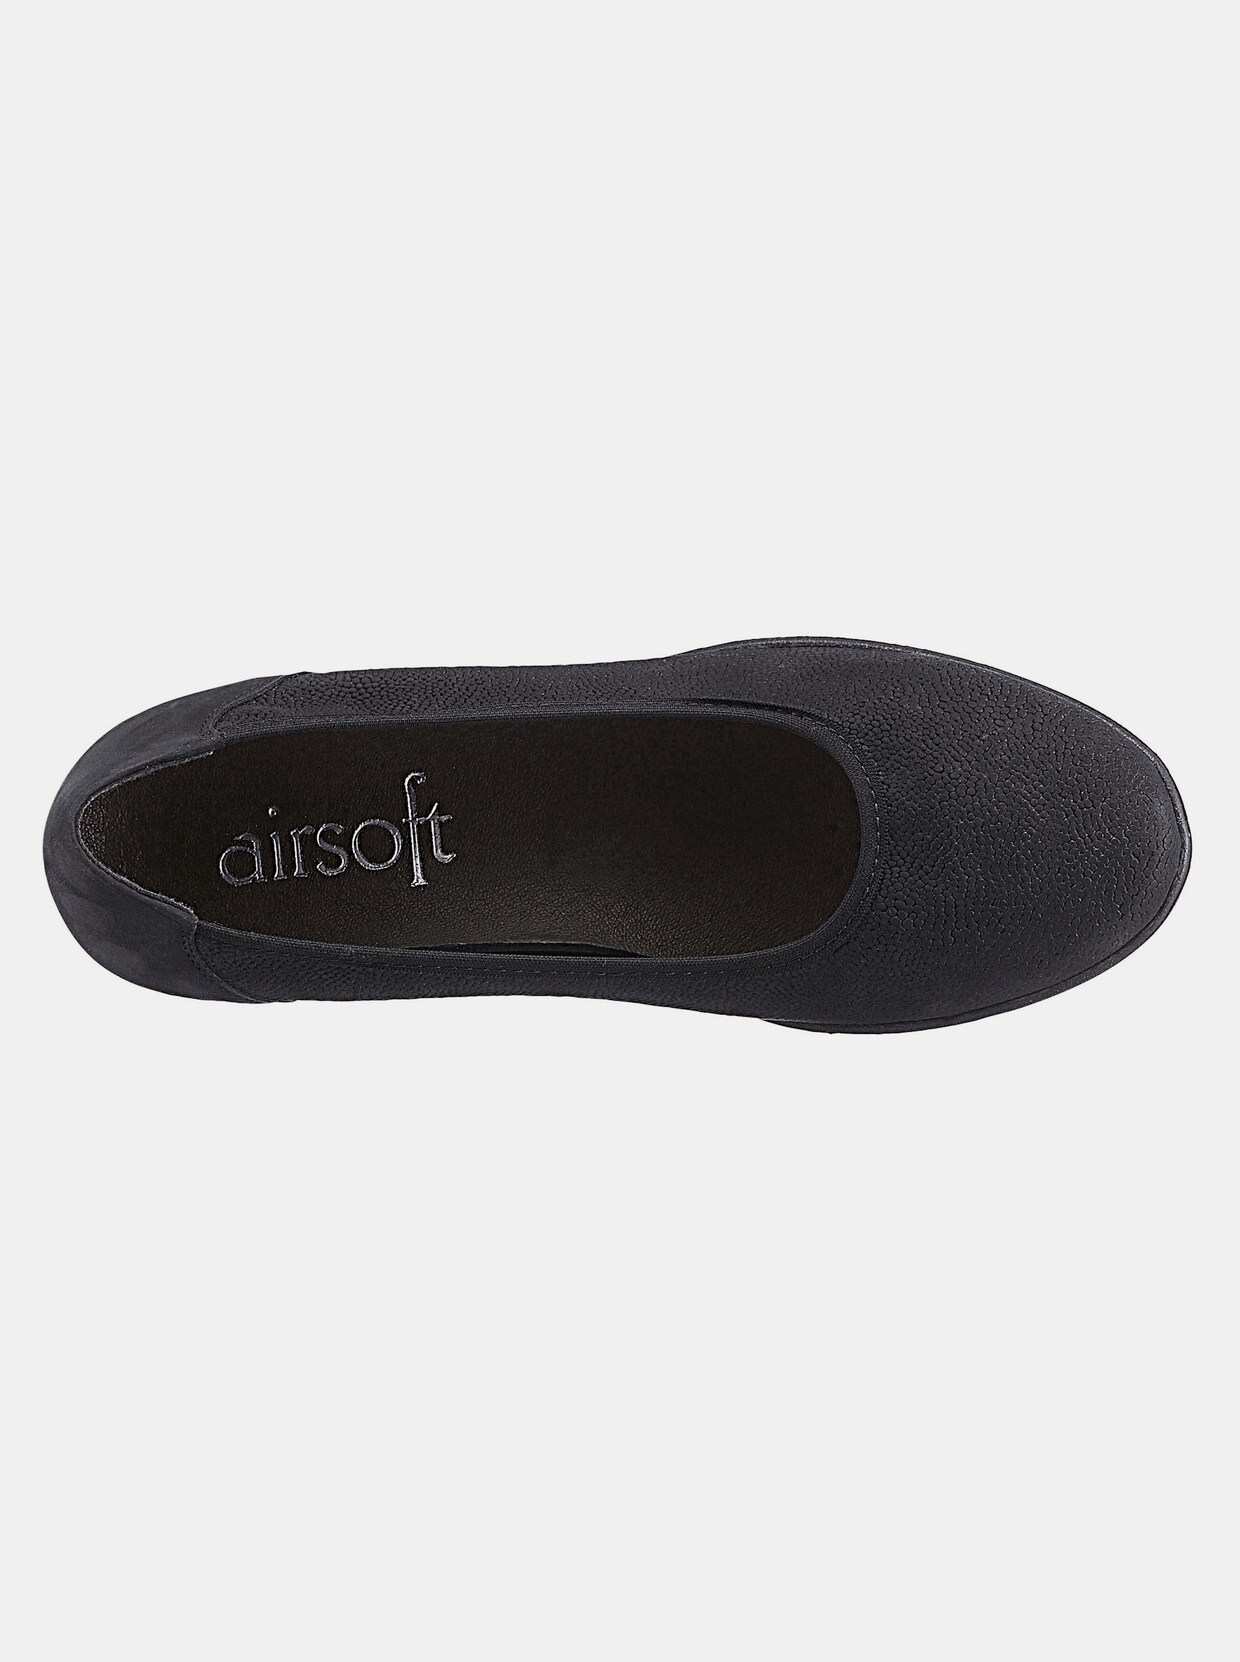 airsoft comfort+ Ballerina - schwarz